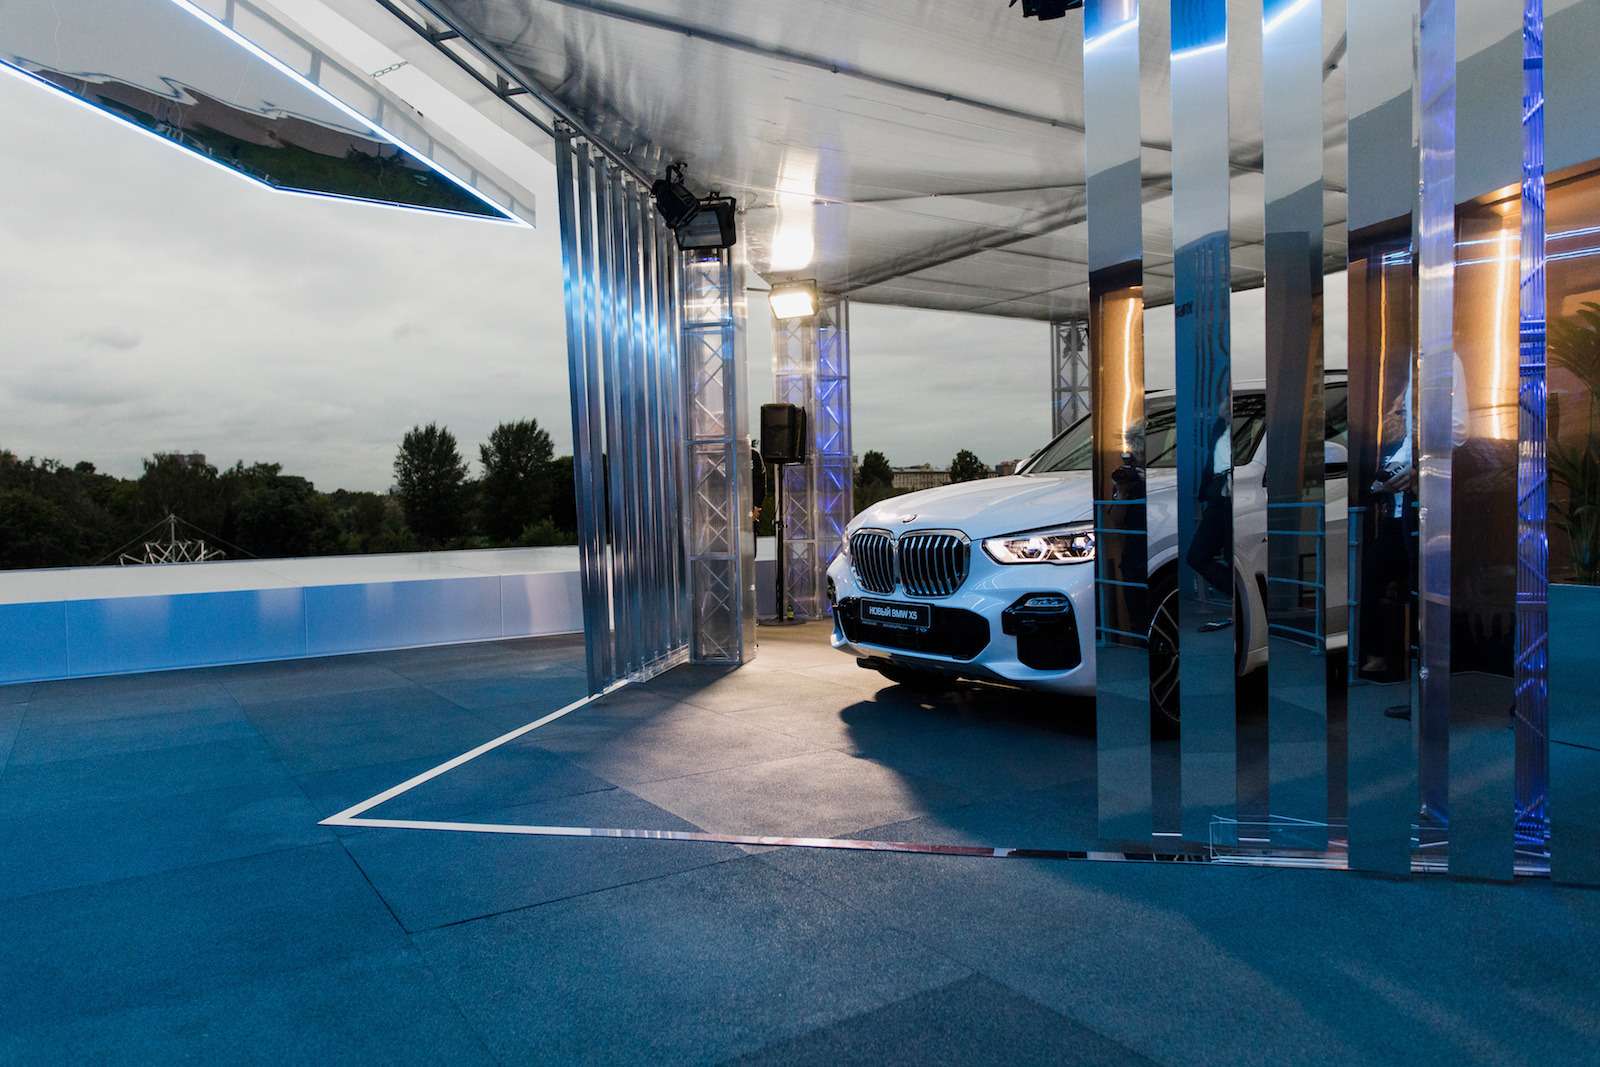 Абсолютно новый BMW X5 всплыл в Москве. Задолго до официальной премьеры! — фото 889835